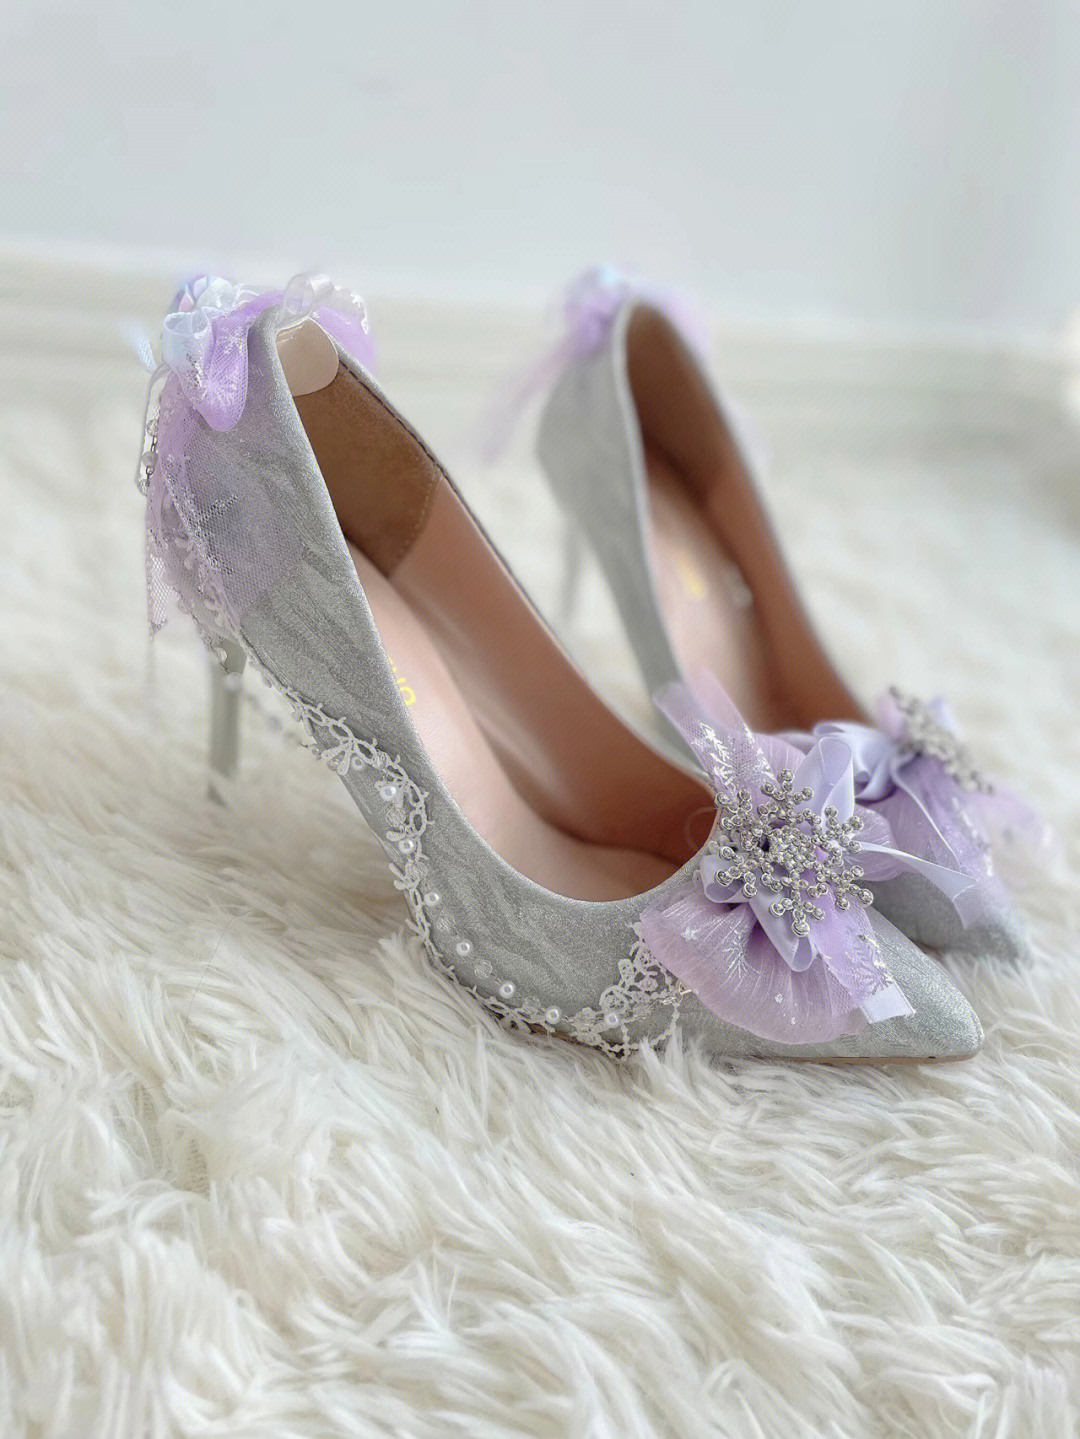 洛丽塔#高跟鞋#水晶鞋 快看,这是像冰雪公主穿的鞋子哎!